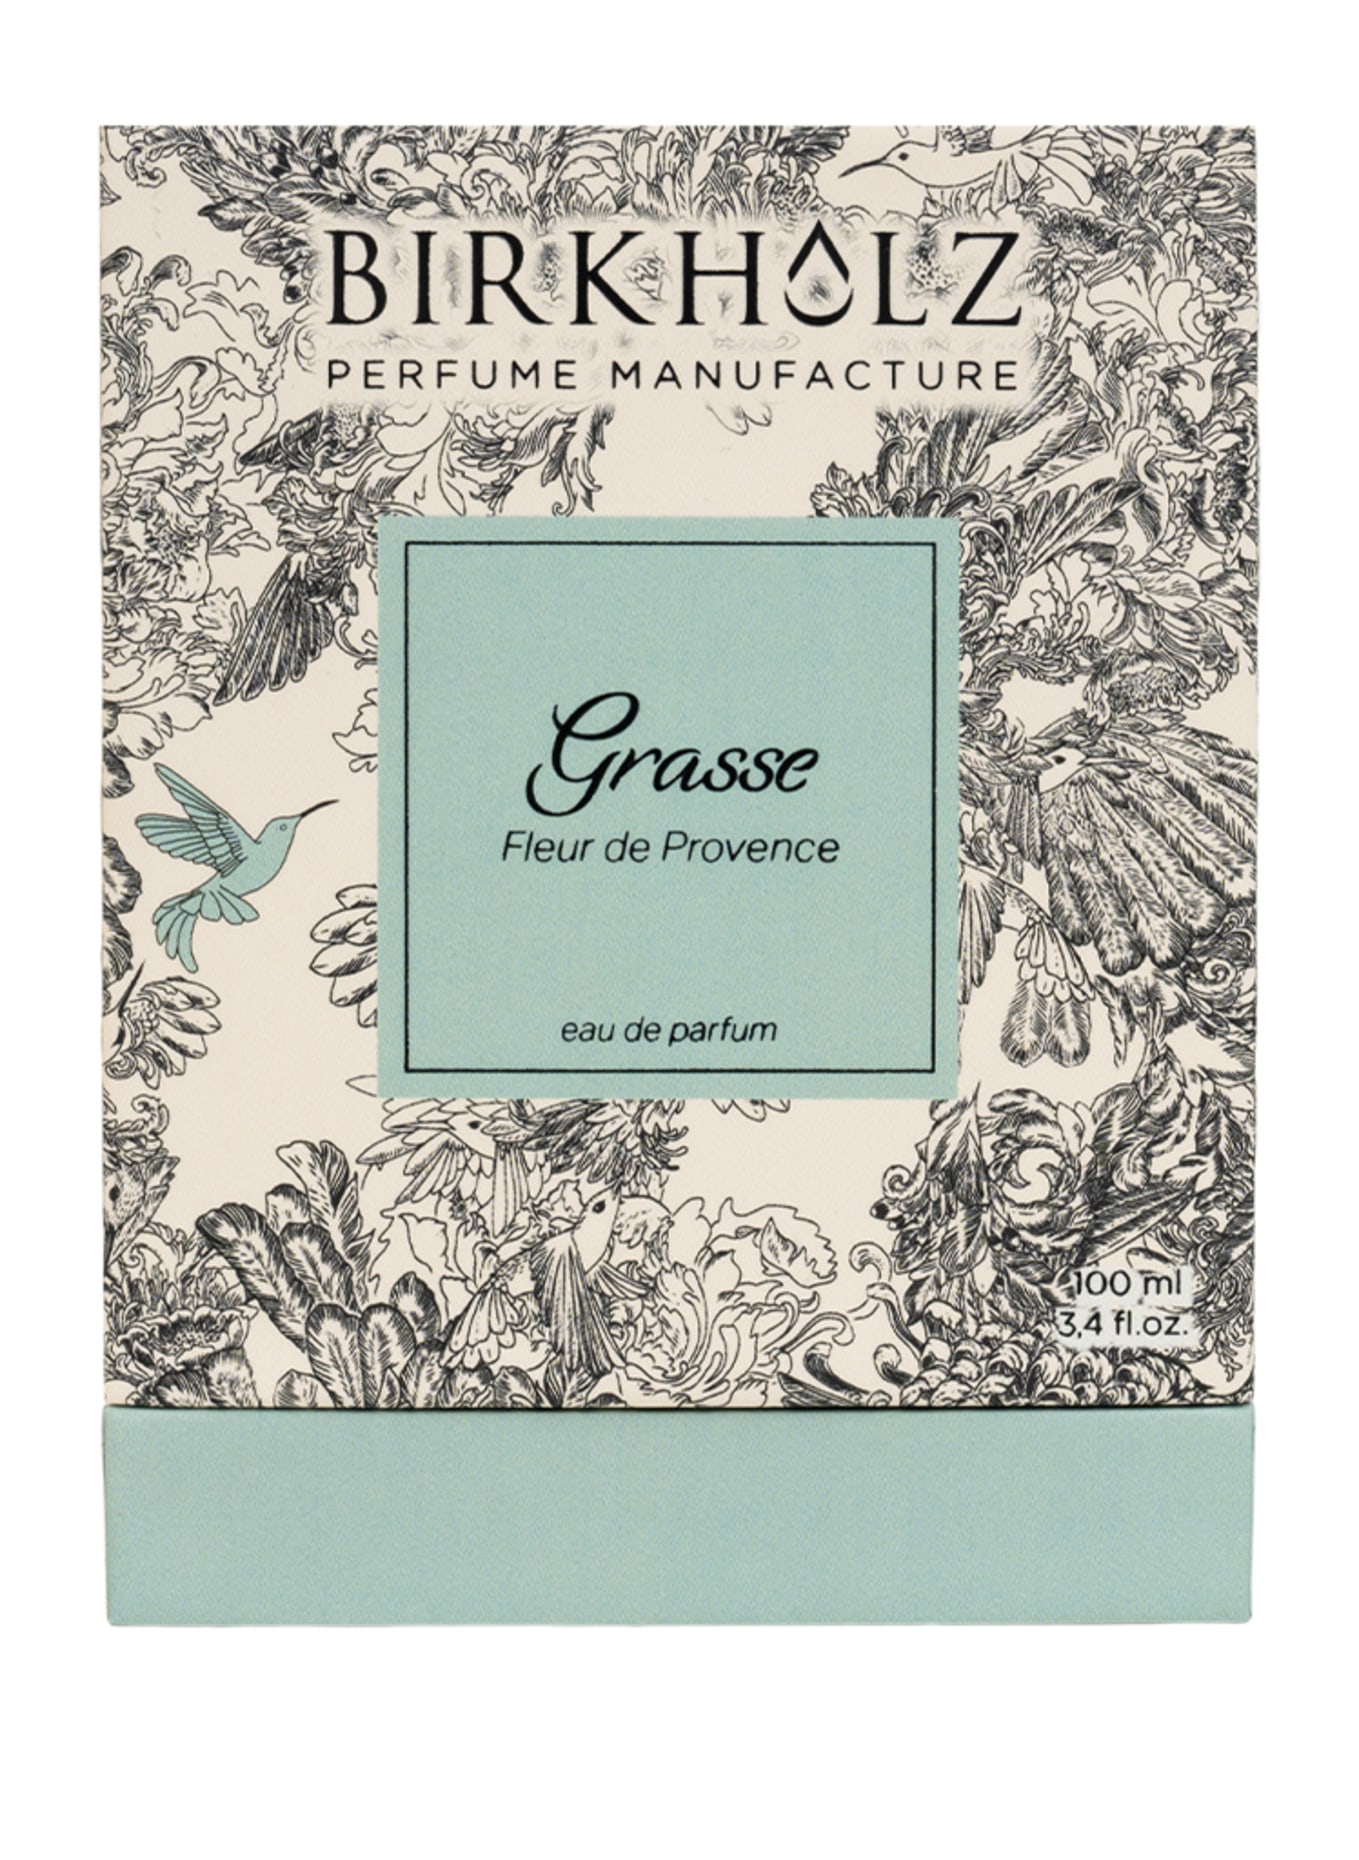 BIRKHOLZ GRASSE - FLEUR DE PROVENCE (Obrázek 2)